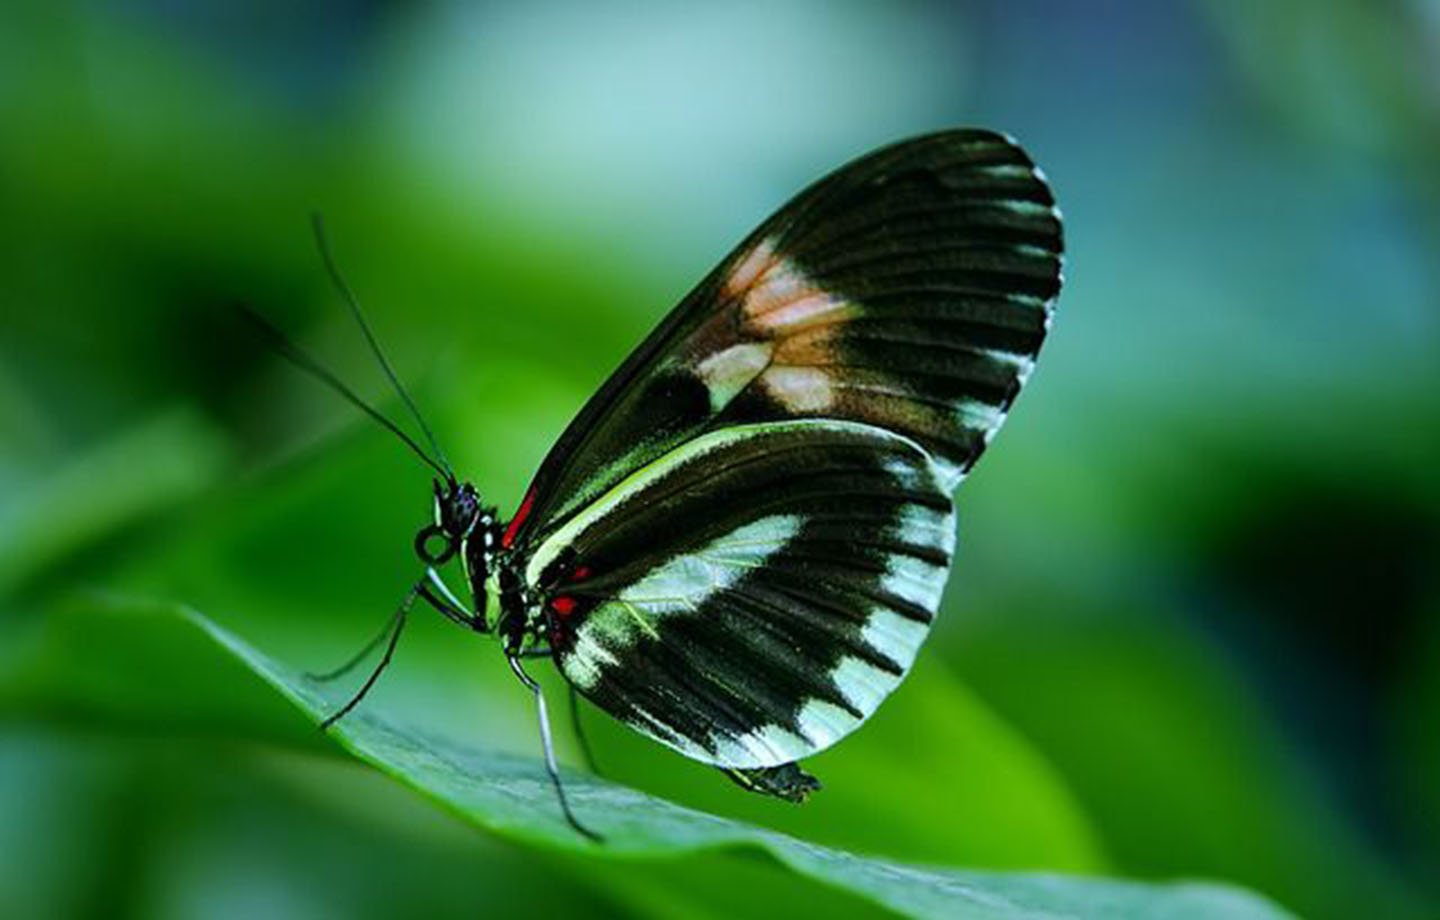 Taman Kupu-kupu Tabanan Bali Butterfly Park